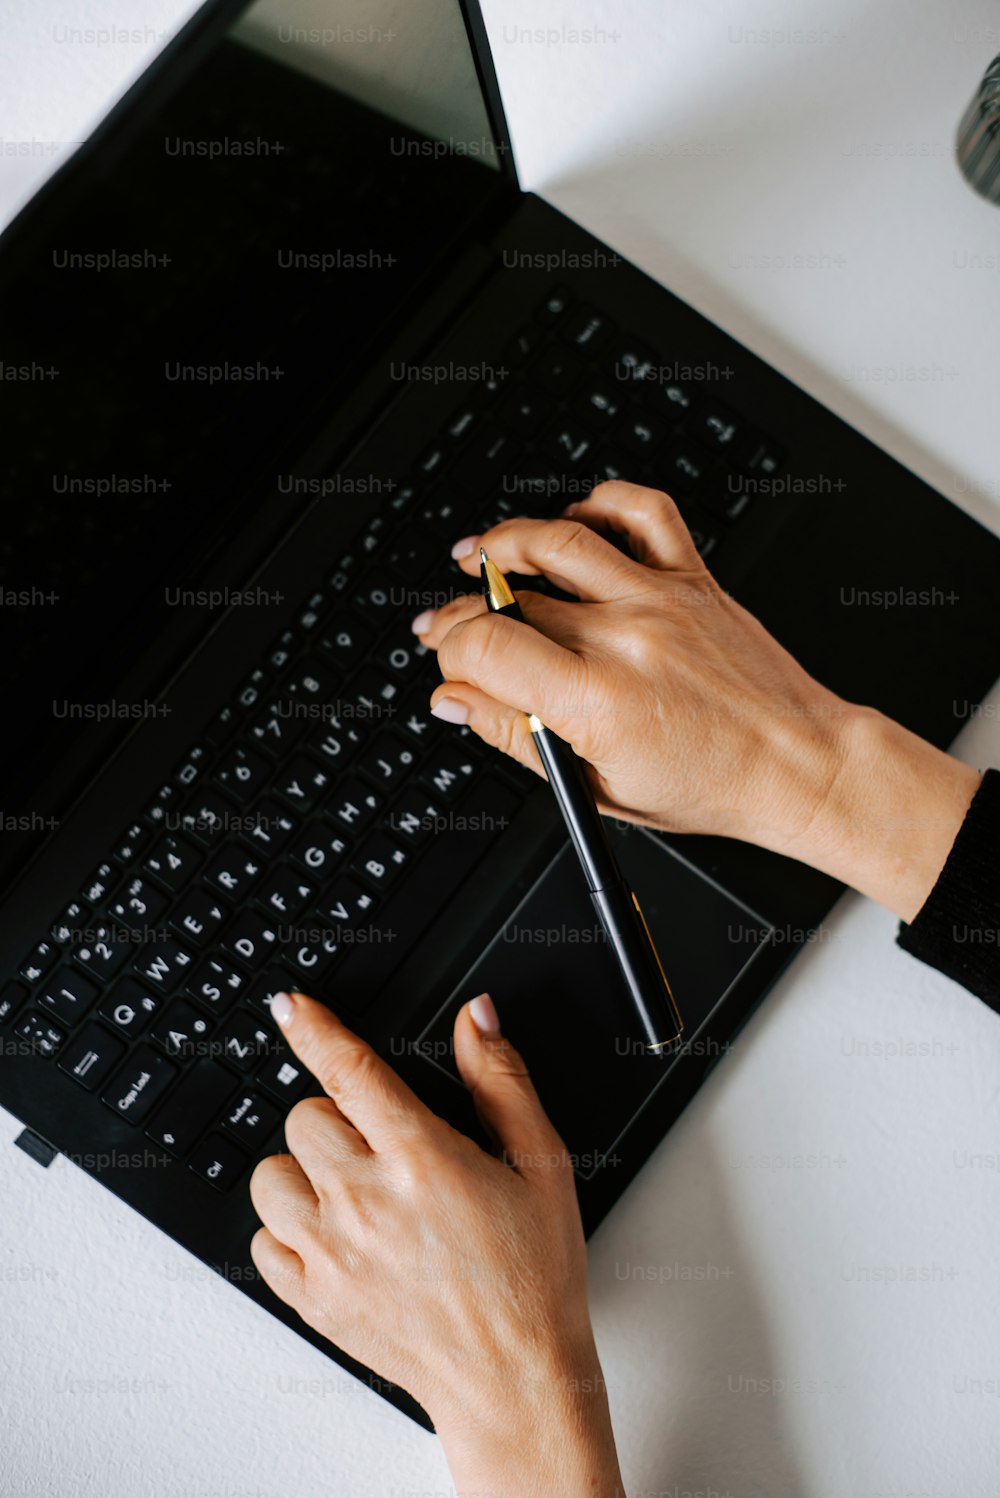 Una persona está escribiendo en una computadora portátil negra